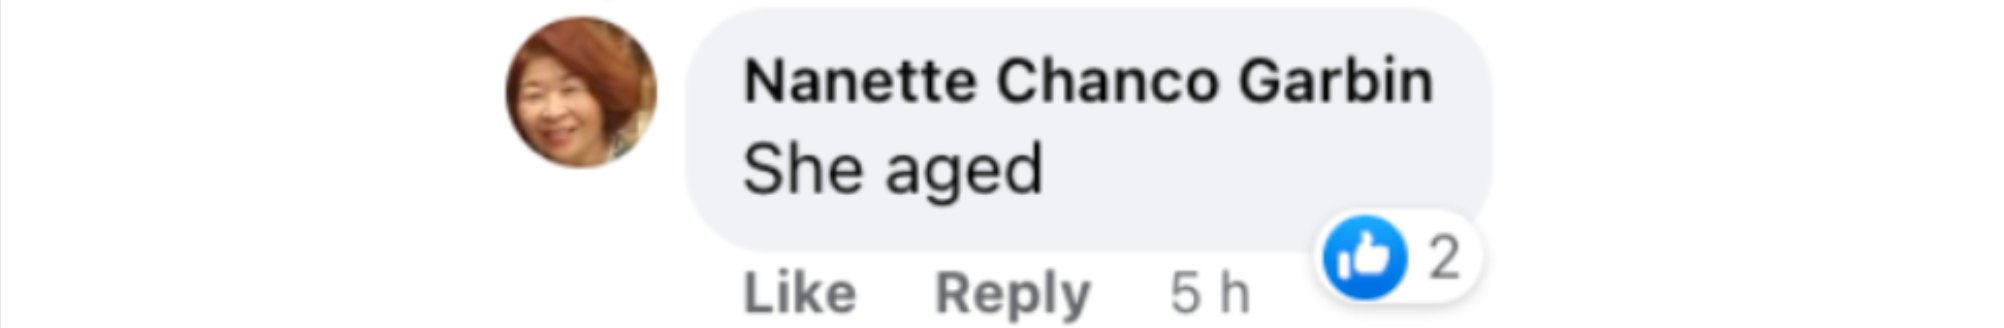 Kommentar eines Fans zu einem Facebook-Post der Daily Mail, der Jennifer Aniston am 15. März 2023 in Paris, Frankreich, zeigt | Quelle: Facebook/Daily Mail